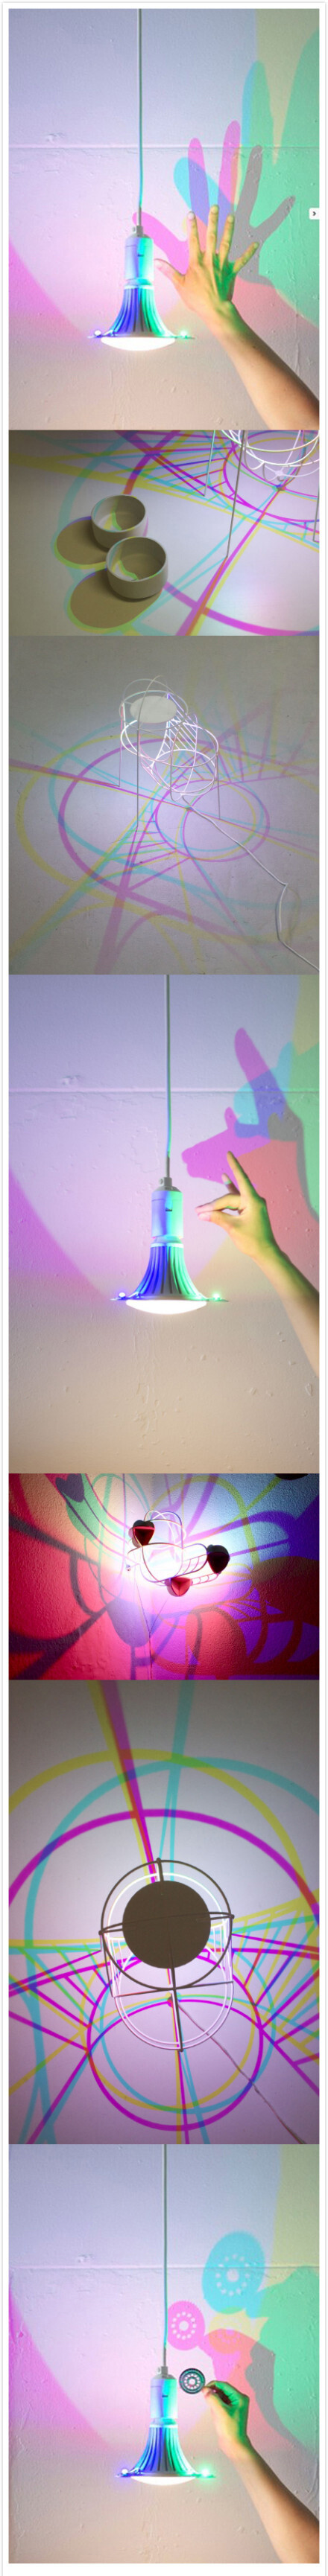 #v觉炫酷创意# CMYK四色分光LED灯，让影子不再是属于黑色的单调，也可以华丽丽的多姿多彩。设计师Dennis Parren用一只普通LED灯泡和一组四色LED灯泡完成了这个创意，在墙壁和屋顶上形成LED灯影的奇幻美学。 寻物链接：www.vjue.com/gyc/qita/home/